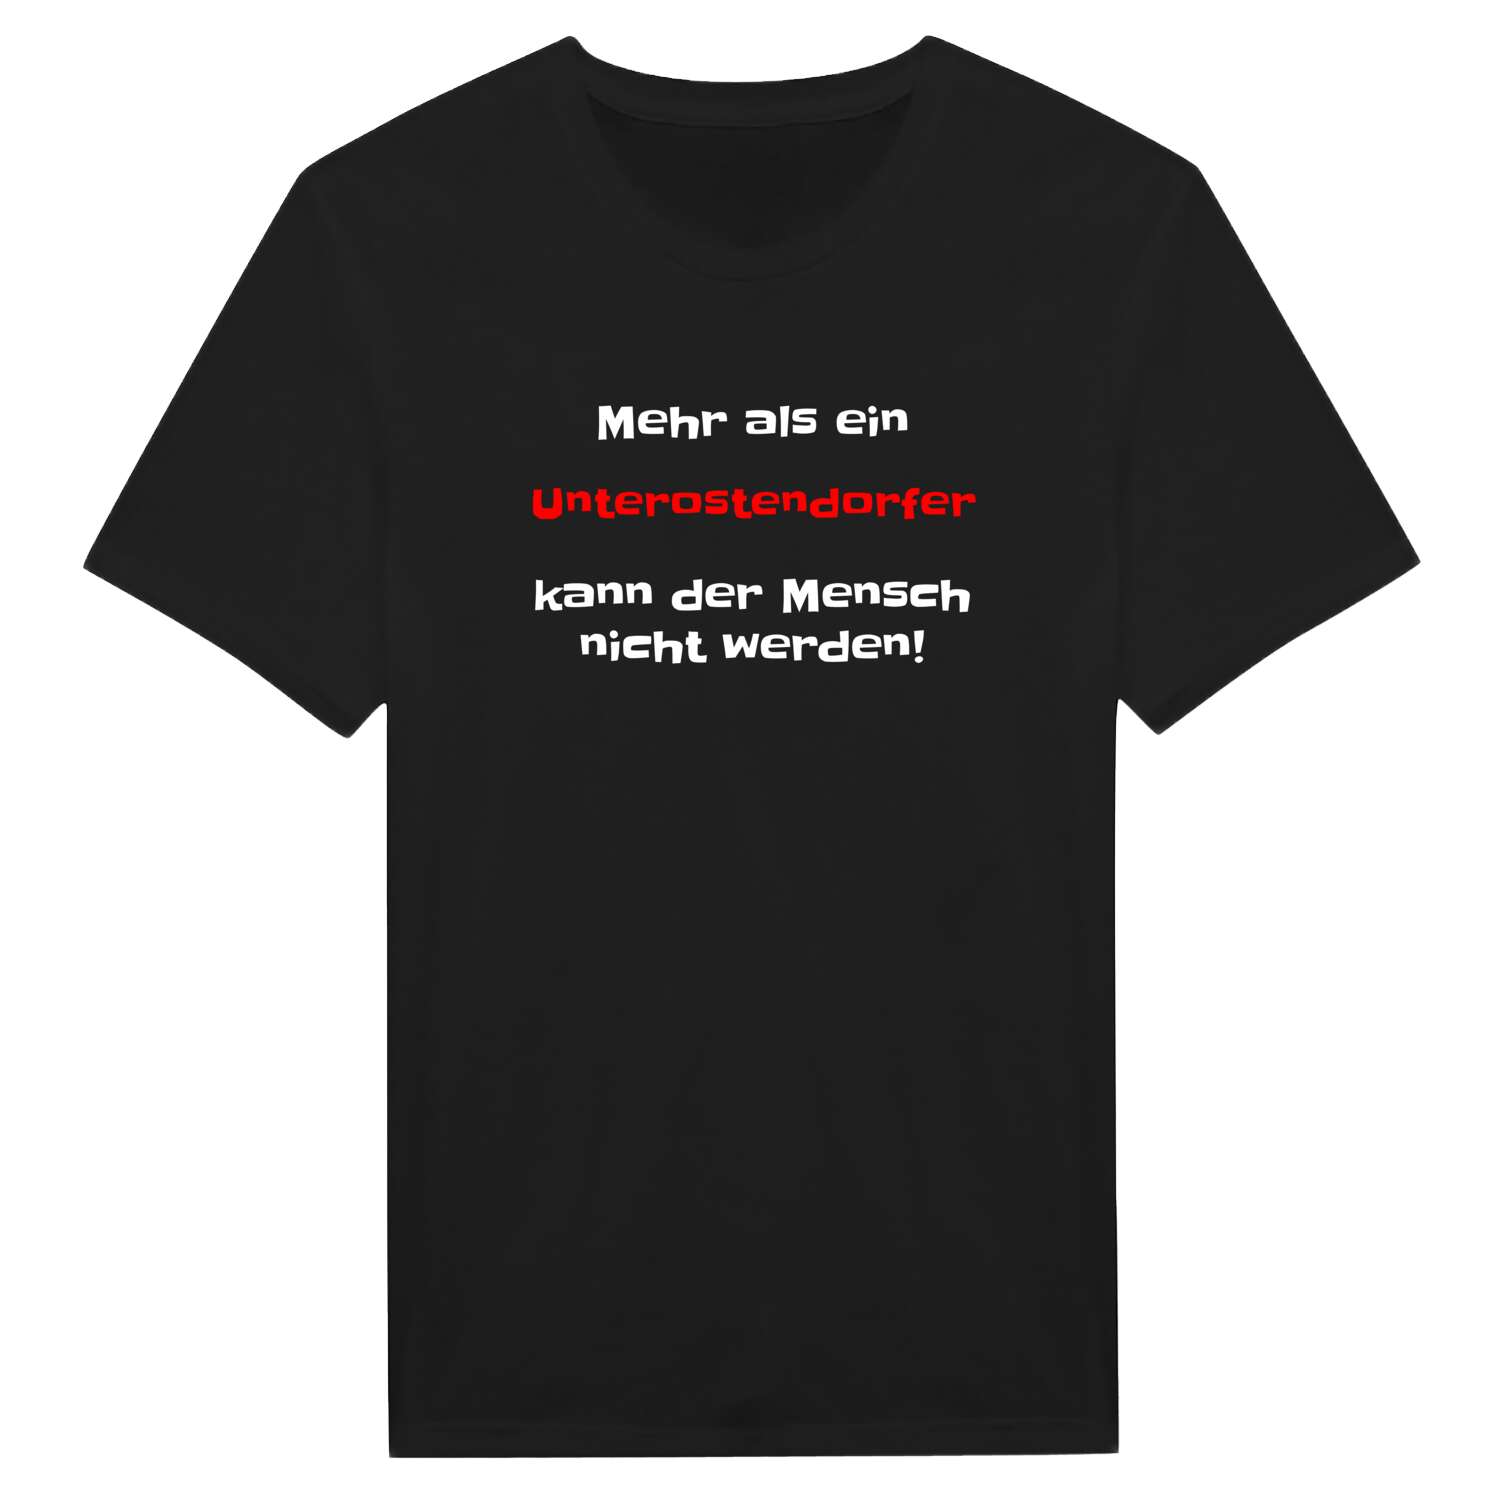 Unterostendorf T-Shirt »Mehr als ein«